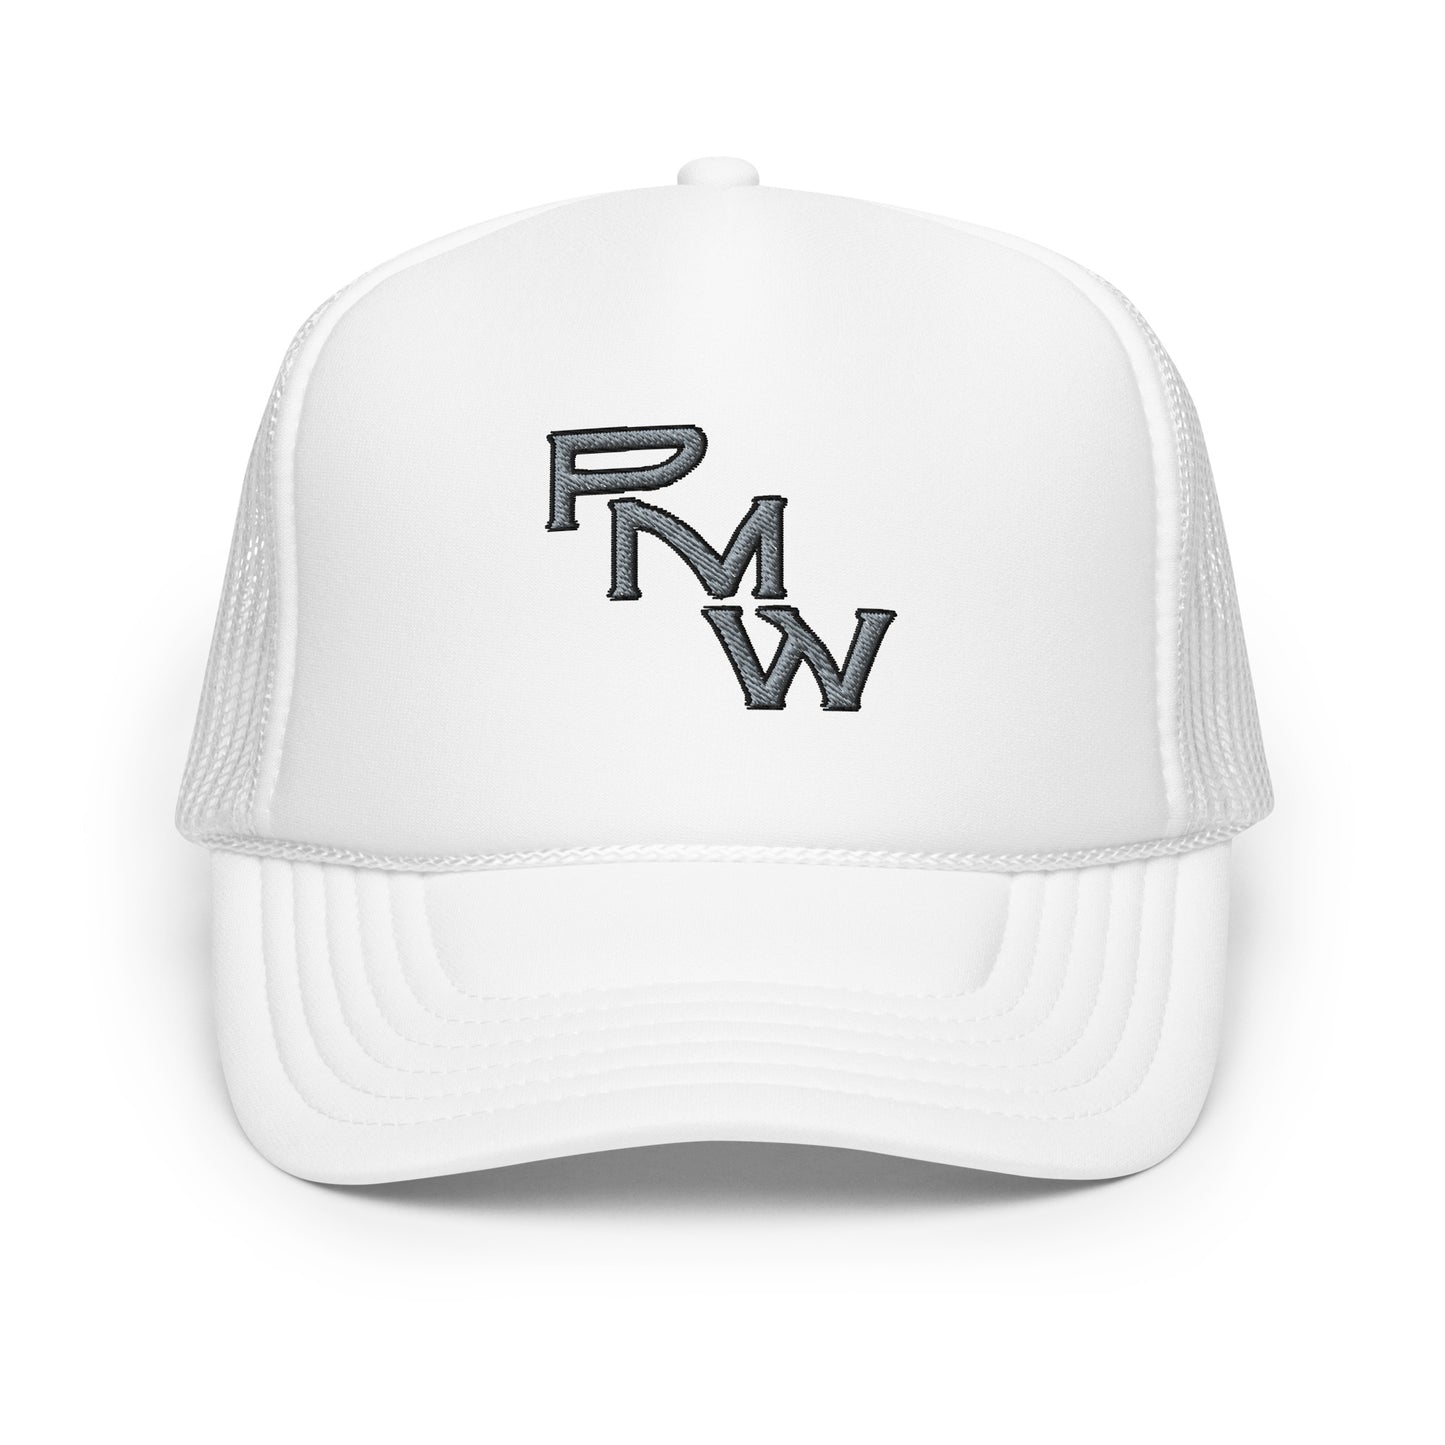 Pender Metal Works (RMW) Foam trucker hat